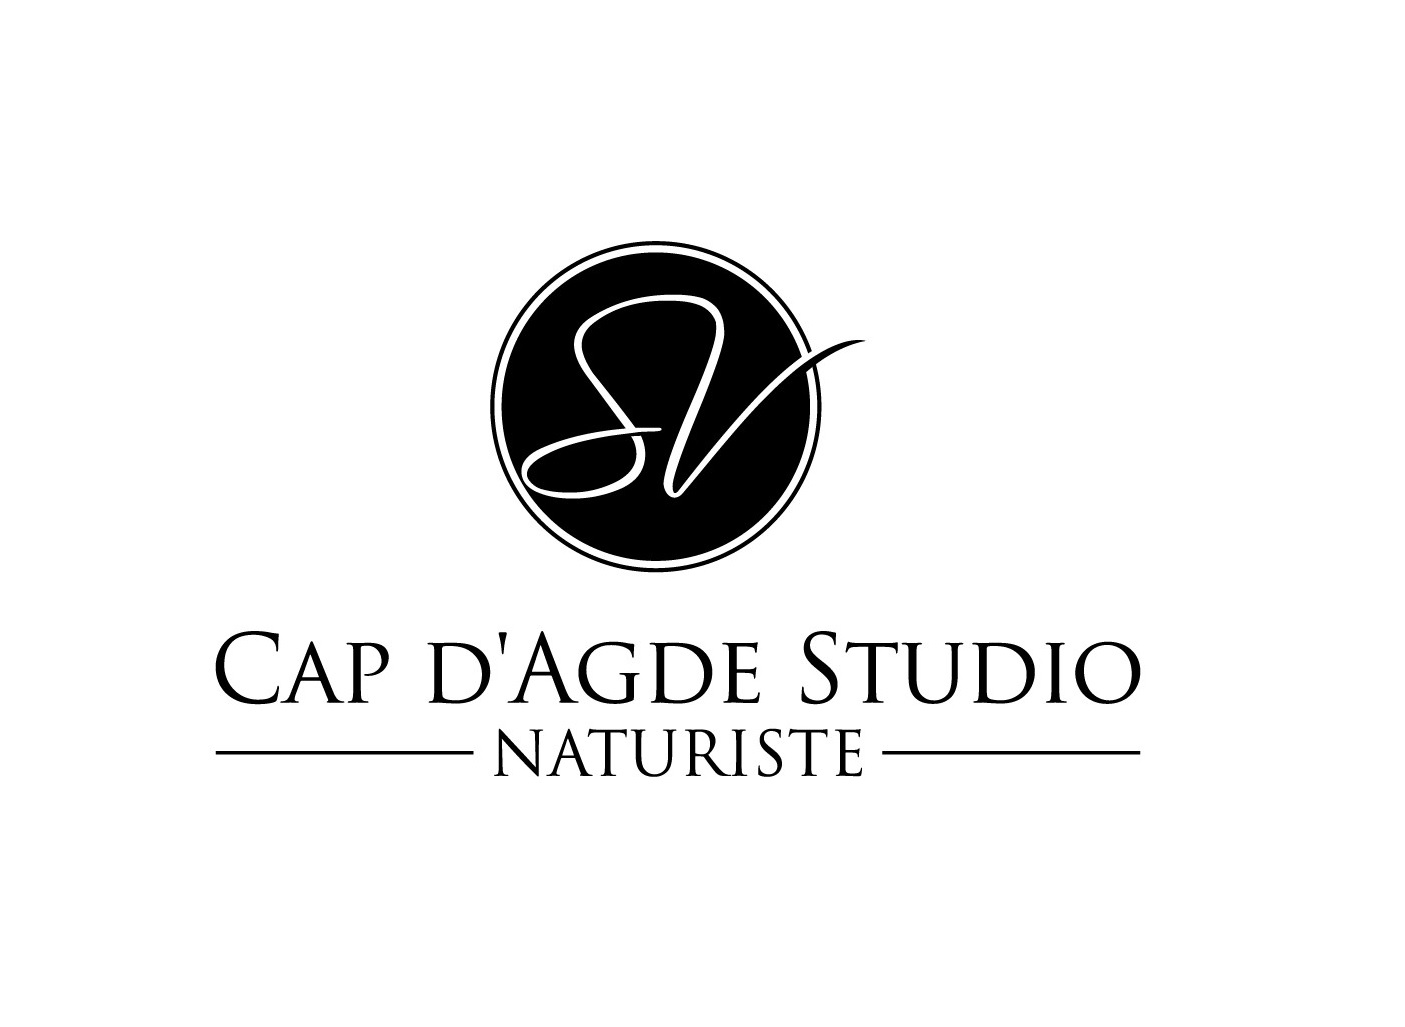 All unsere Wohnungen sind komplett renoviert.
Cap d'Agde Studio ist eine Online-Plattform, die es den Eigentümern ermöglicht, Immobilien zu listen, und den Kunden, diese Immobilien zu buchen.